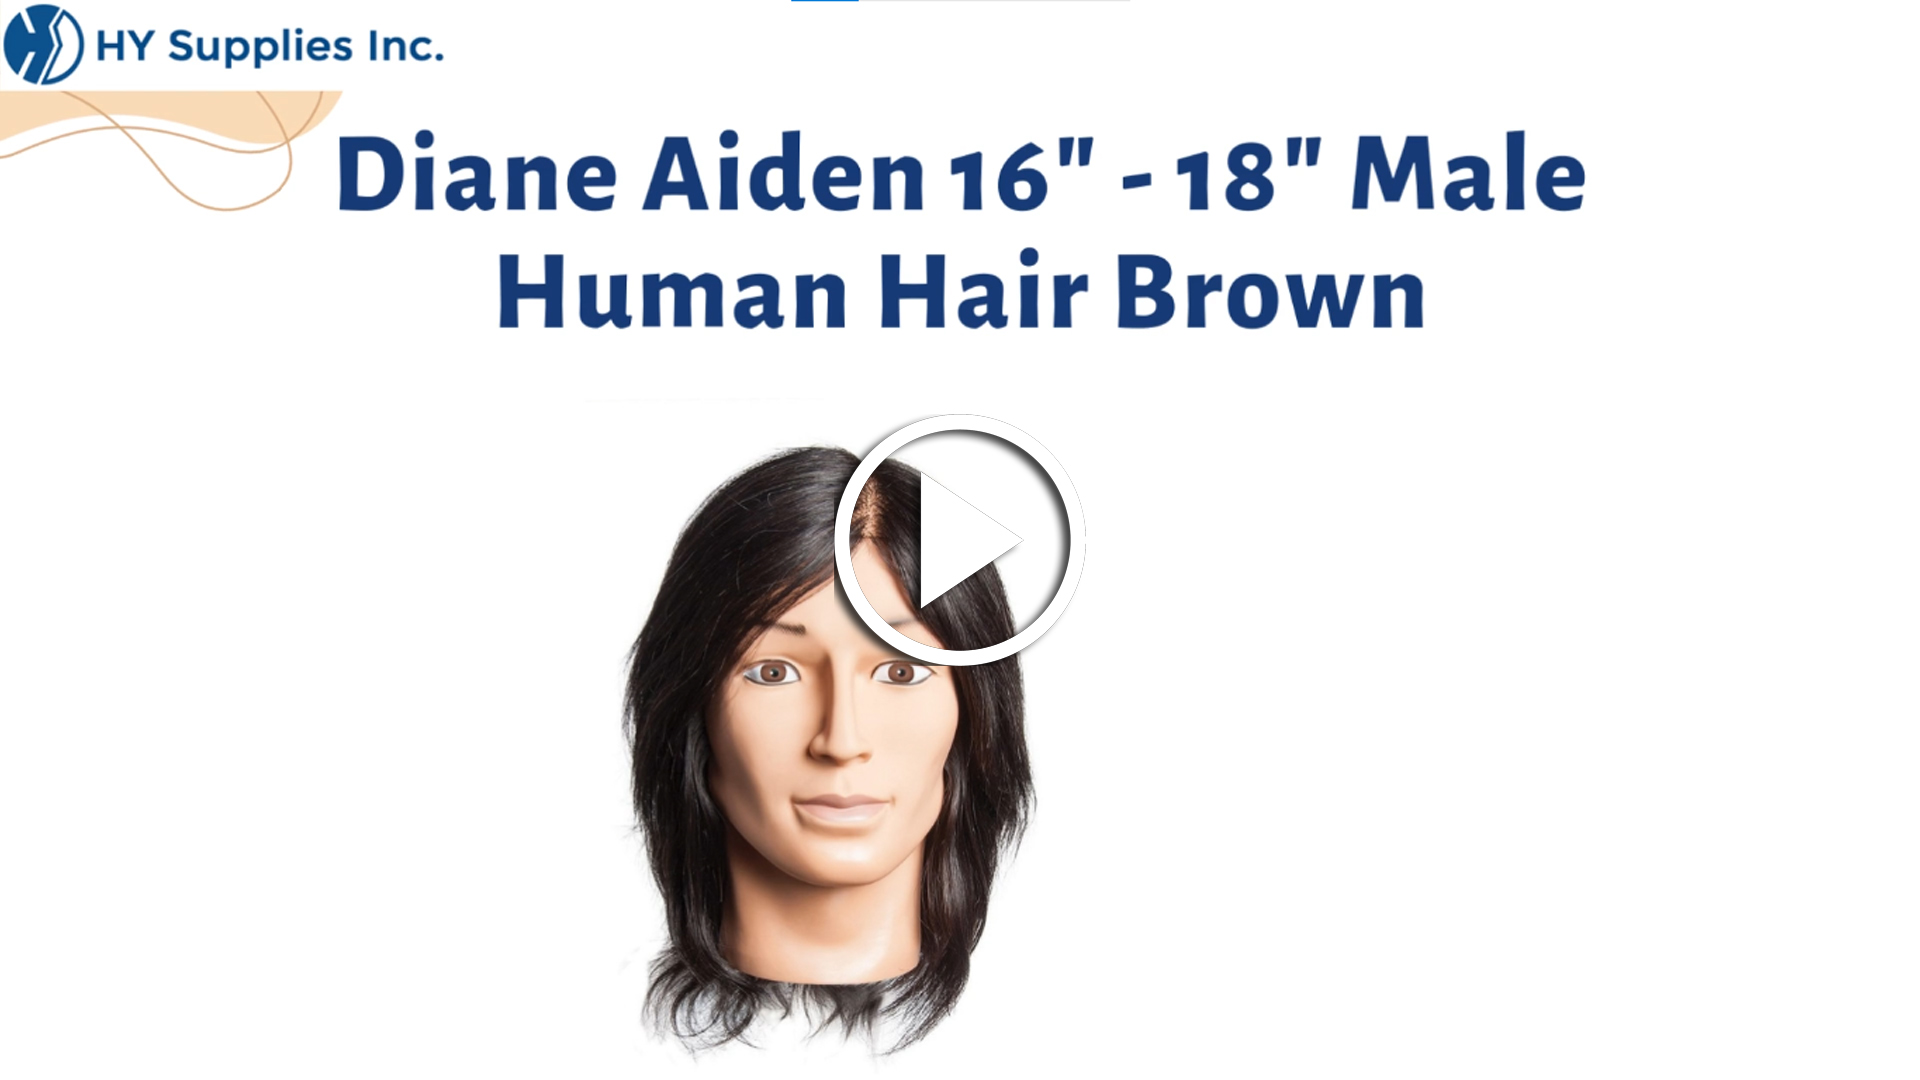 Diane Aiden 16"- 18" Male Human Hair Brown